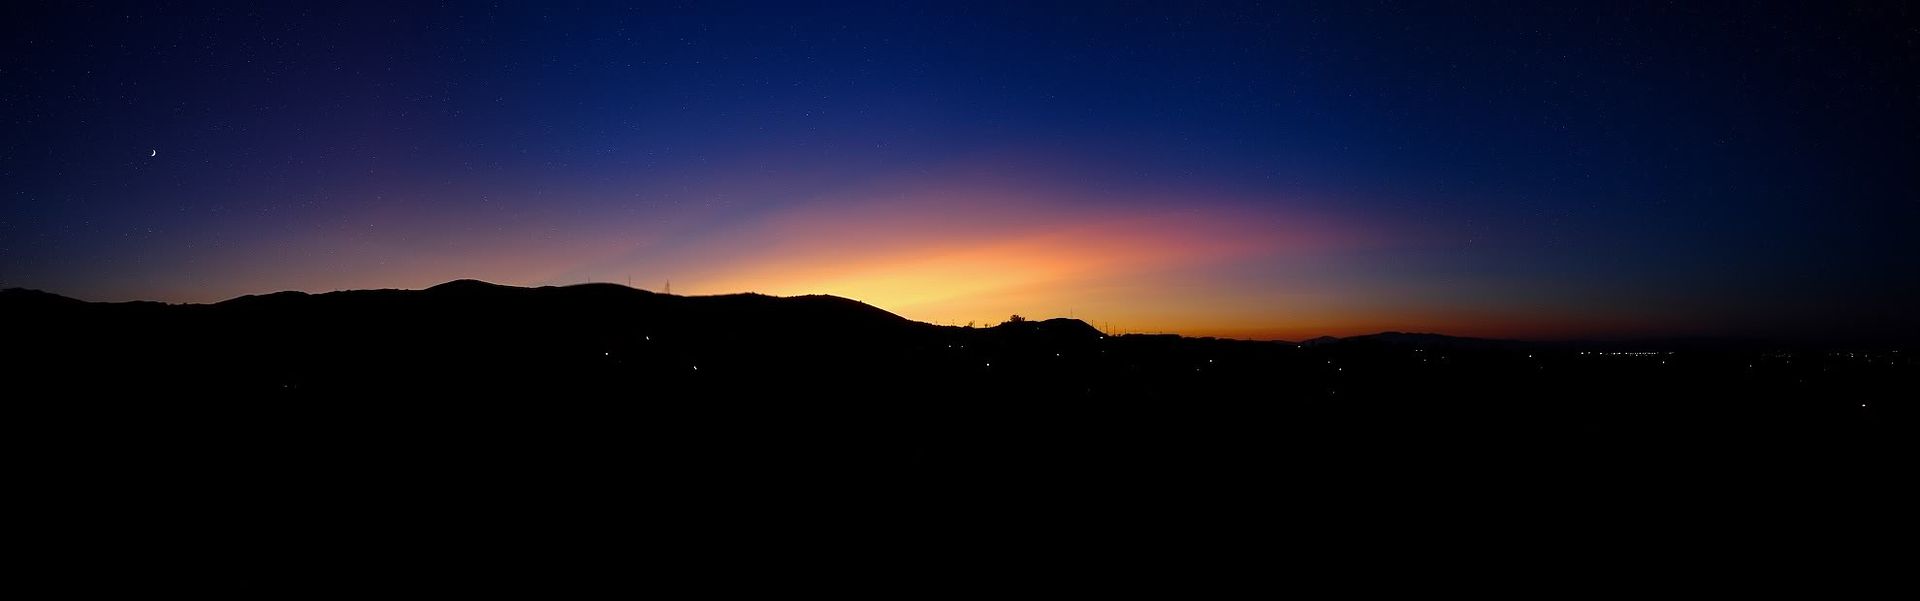 sunset-finalnew4-re.jpg